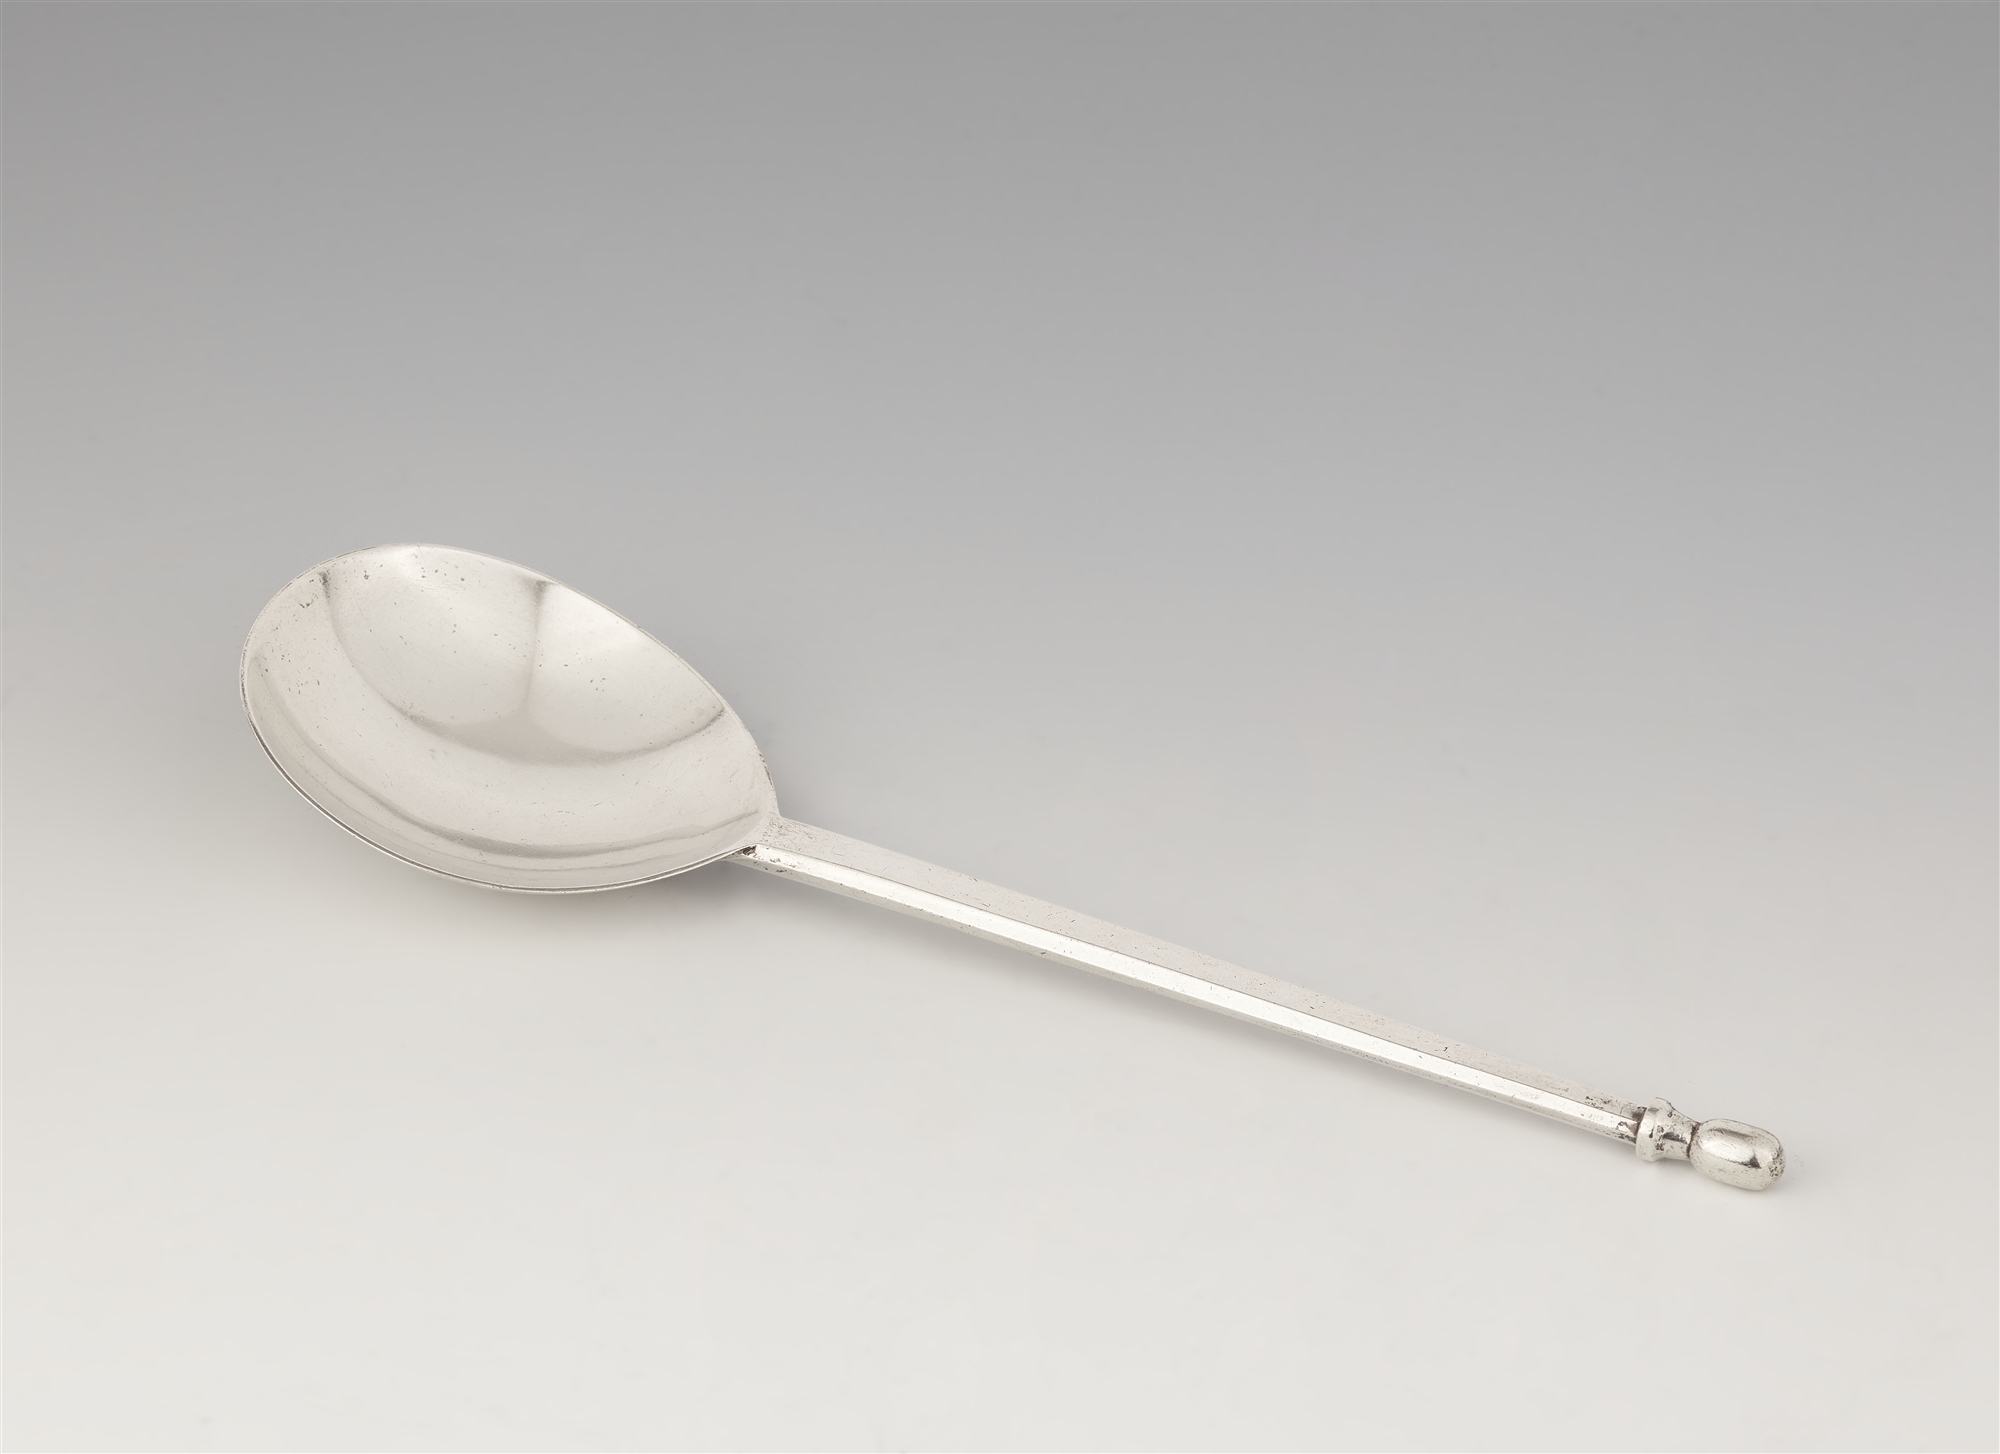 A rare silver serving spoon by Emil Lettré